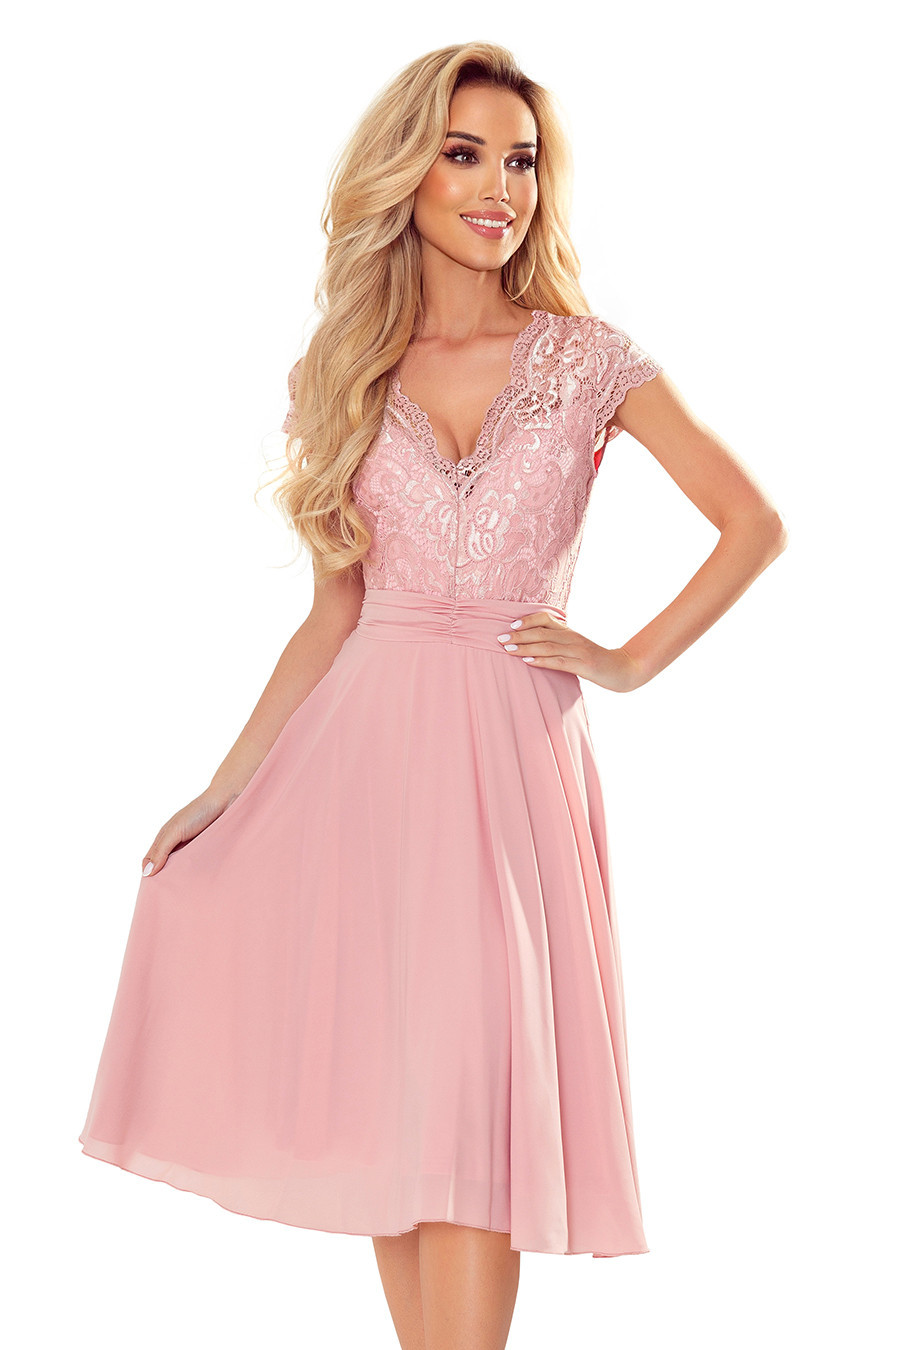 LINDA - Dámské šifonové šaty ve špinavě růžové barvě s krajkovým výstřihem 381-1 L